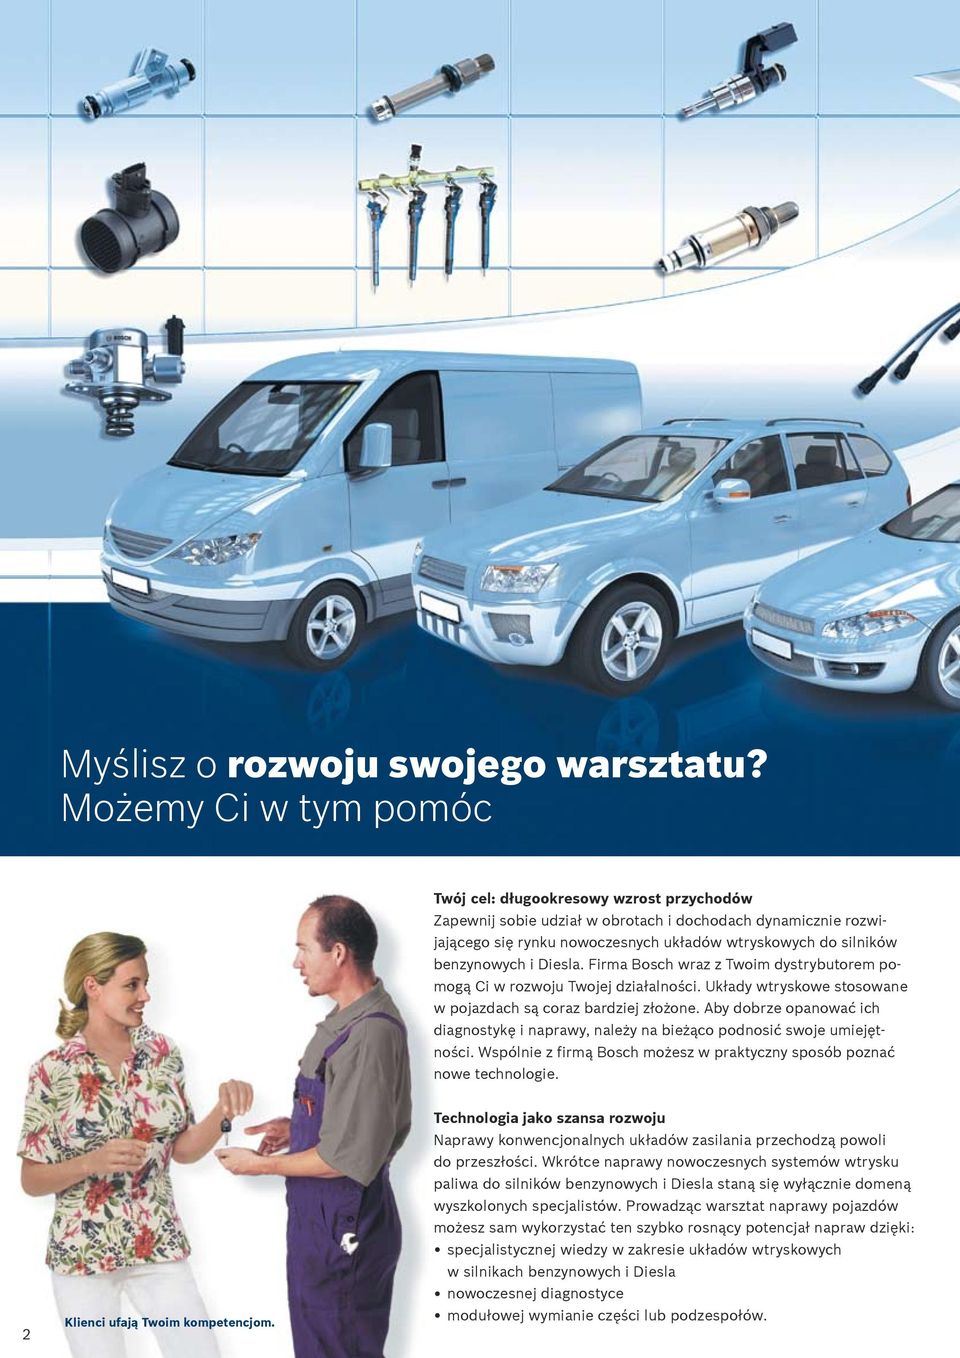 benzynowych i Diesla. Firma Bosch wraz z Twoim dystrybutorem pomogą Ci w rozwoju Twojej działalności. Układy wtryskowe stosowane w pojazdach są coraz bardziej złożone.